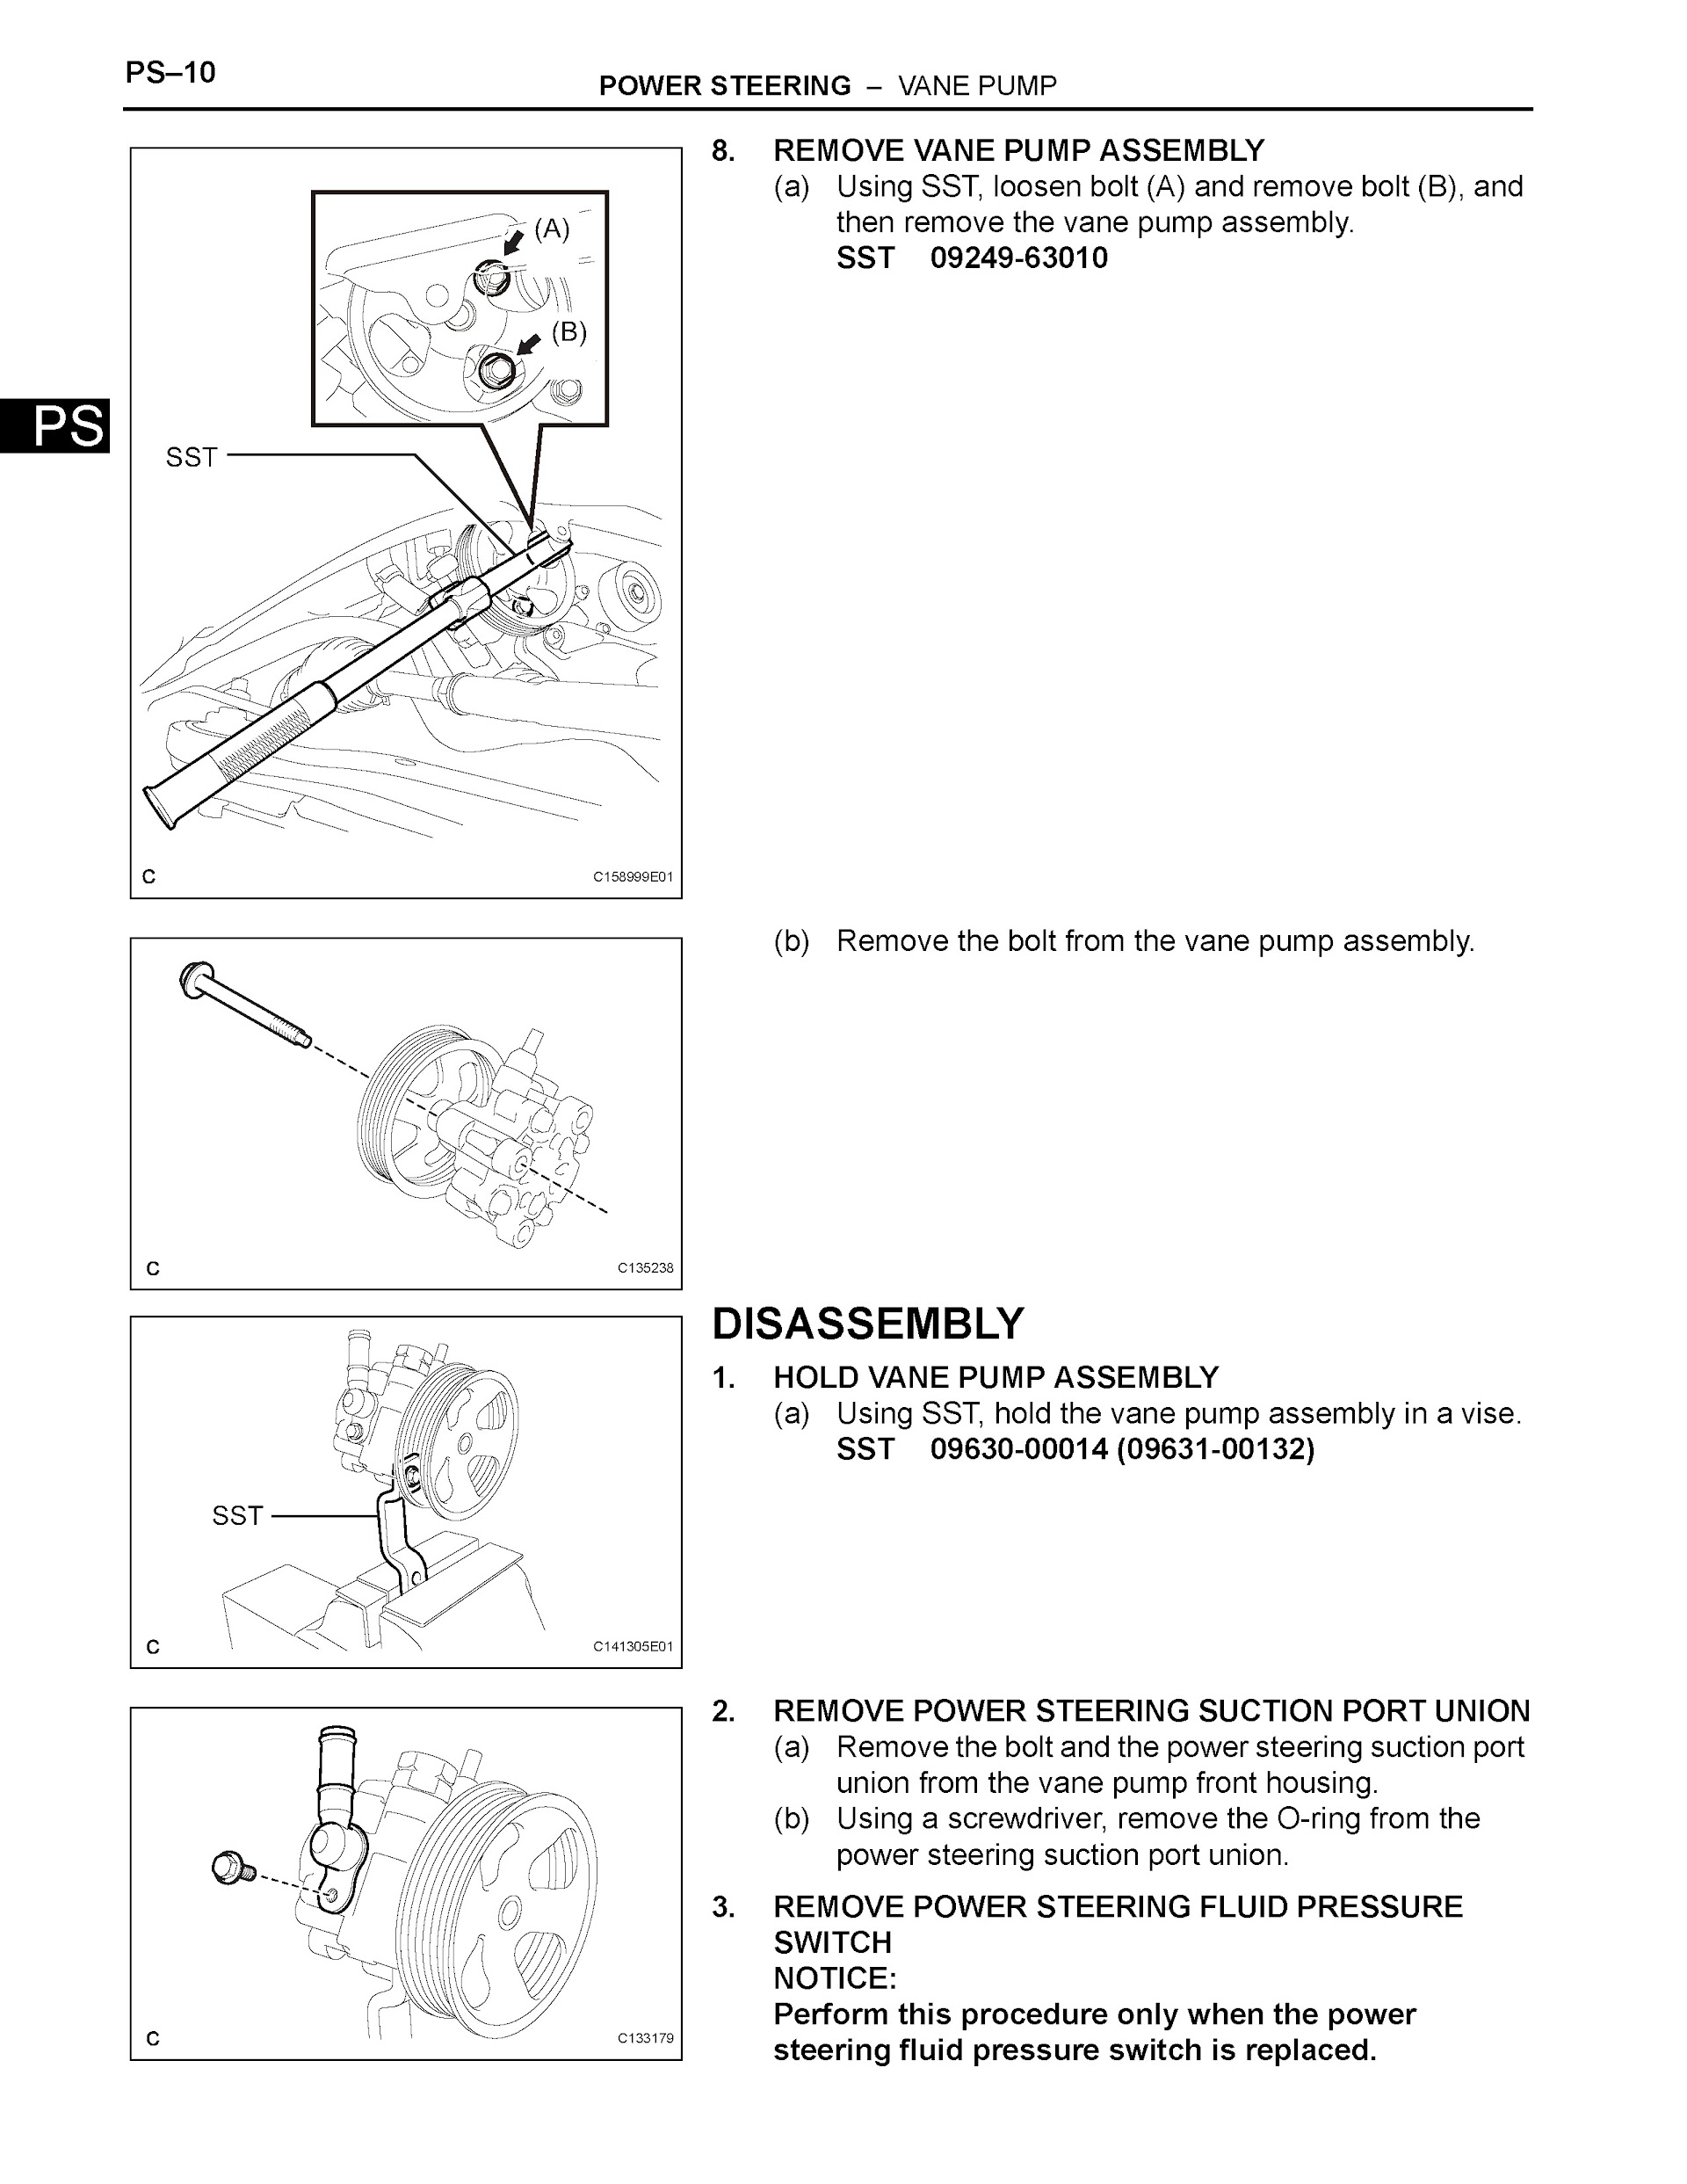 2007 Toyota Sienna Repair Manual, Power Steering